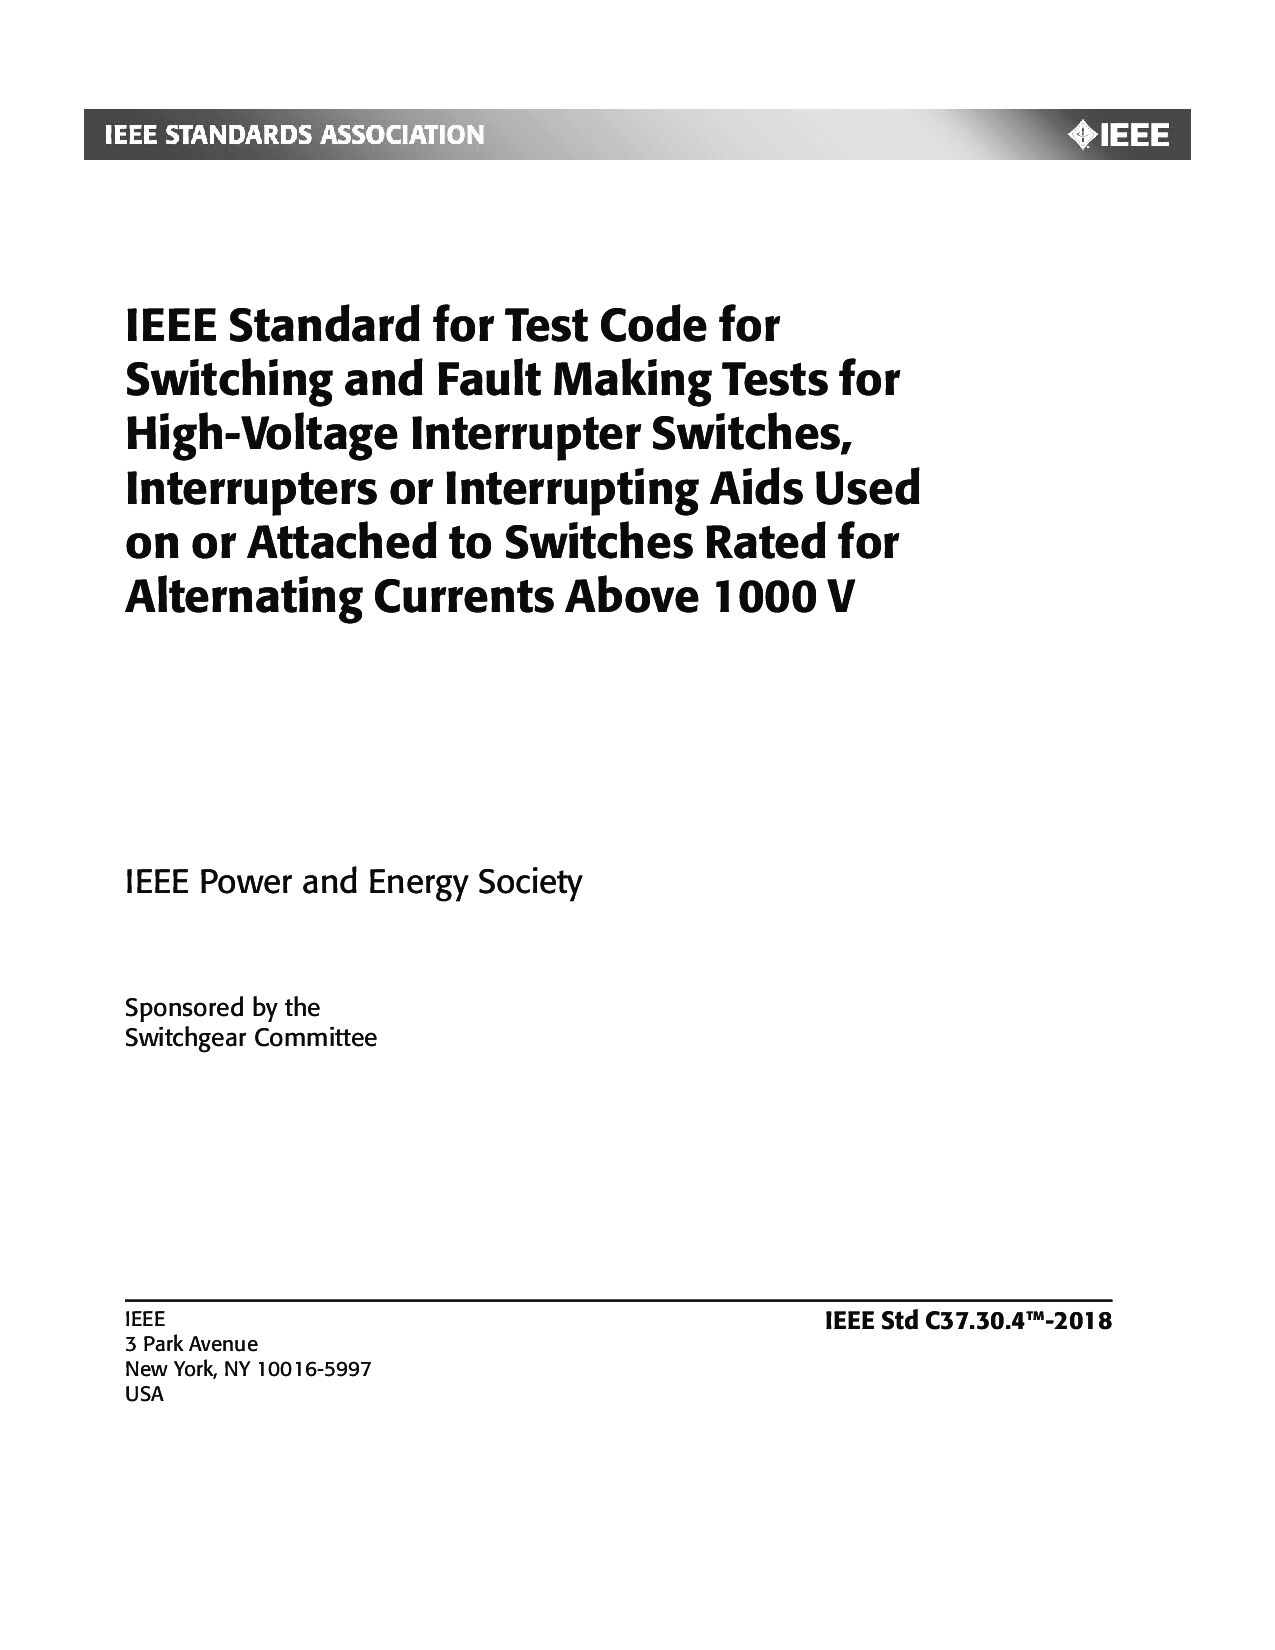 IEEE Std C37.30.4-2018